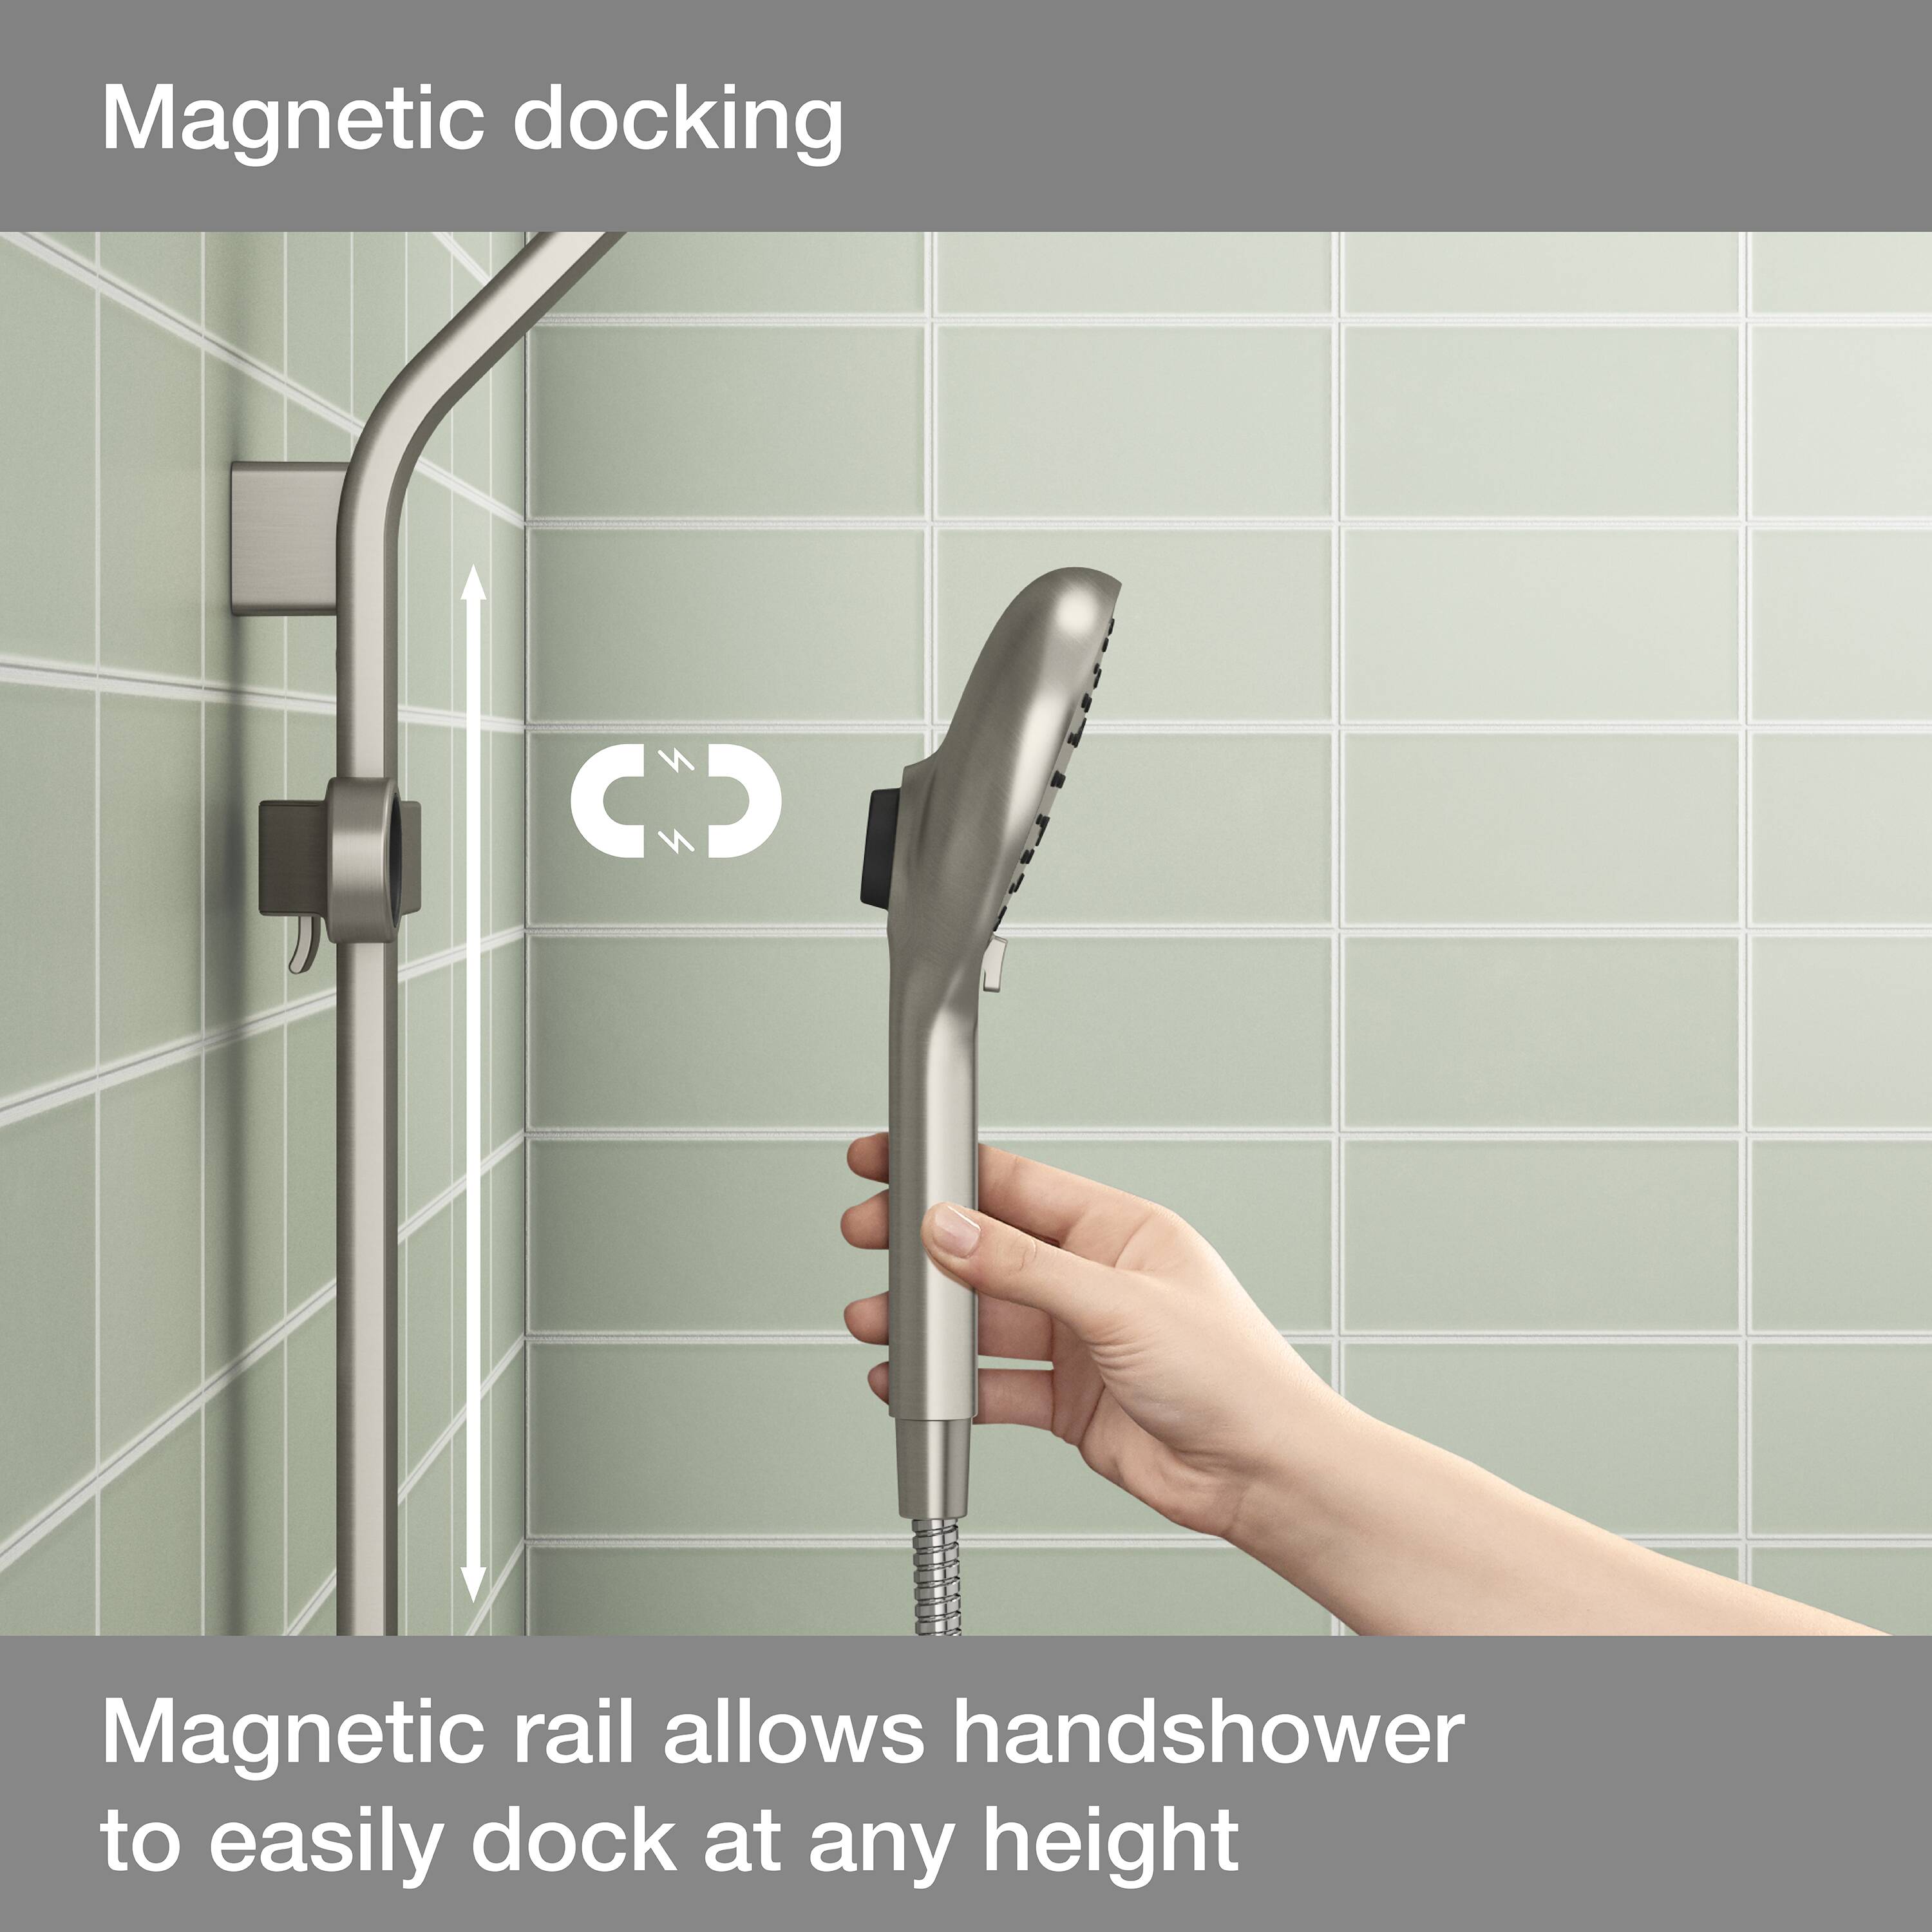 Kohler Rainduet Filter Shower head with 5-layer Cartridge, 5-Flows – Kohler  Online Store